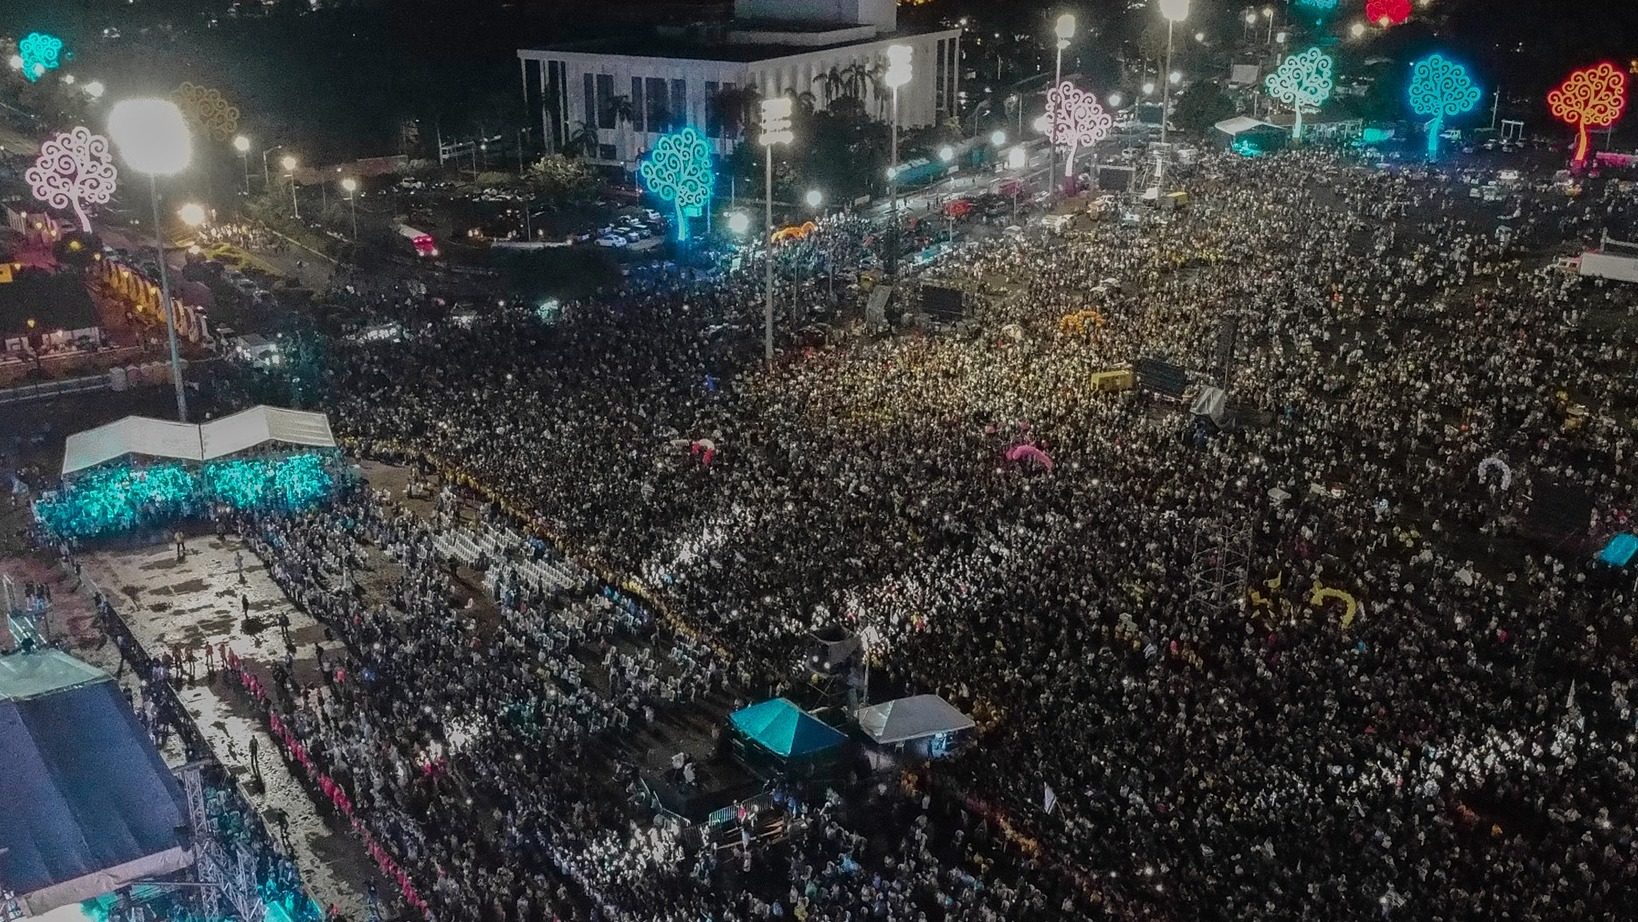 Un grand rassemblement chrétien de nuit, au Nicaragua.